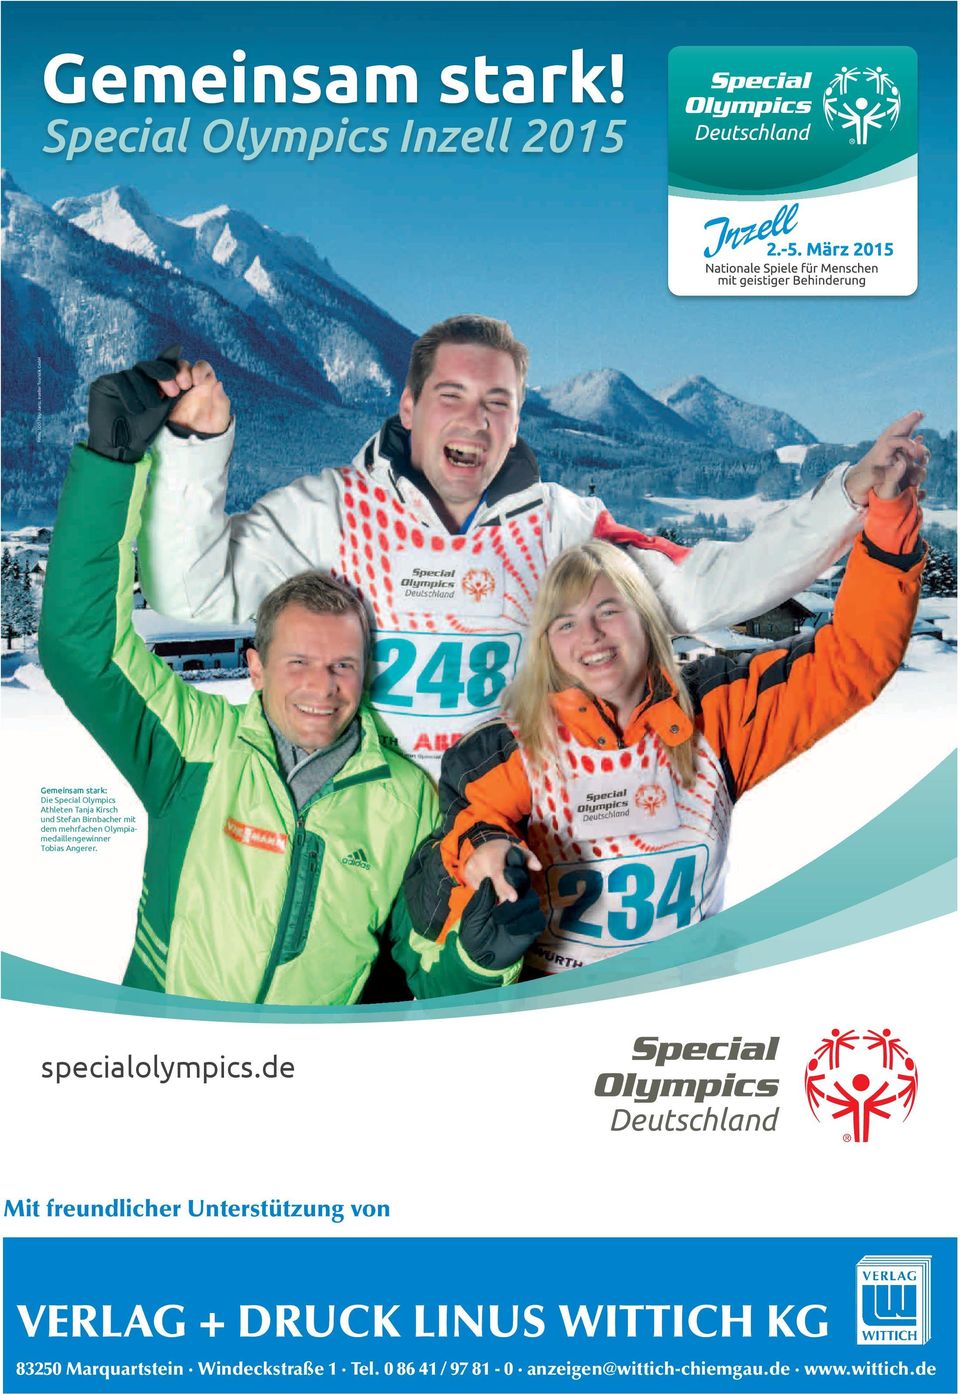 Kirsch und Stefan Birnbacher mit dem mehrfachen Olympiamedaillengewinner Tobias Angerer. specialolympics.